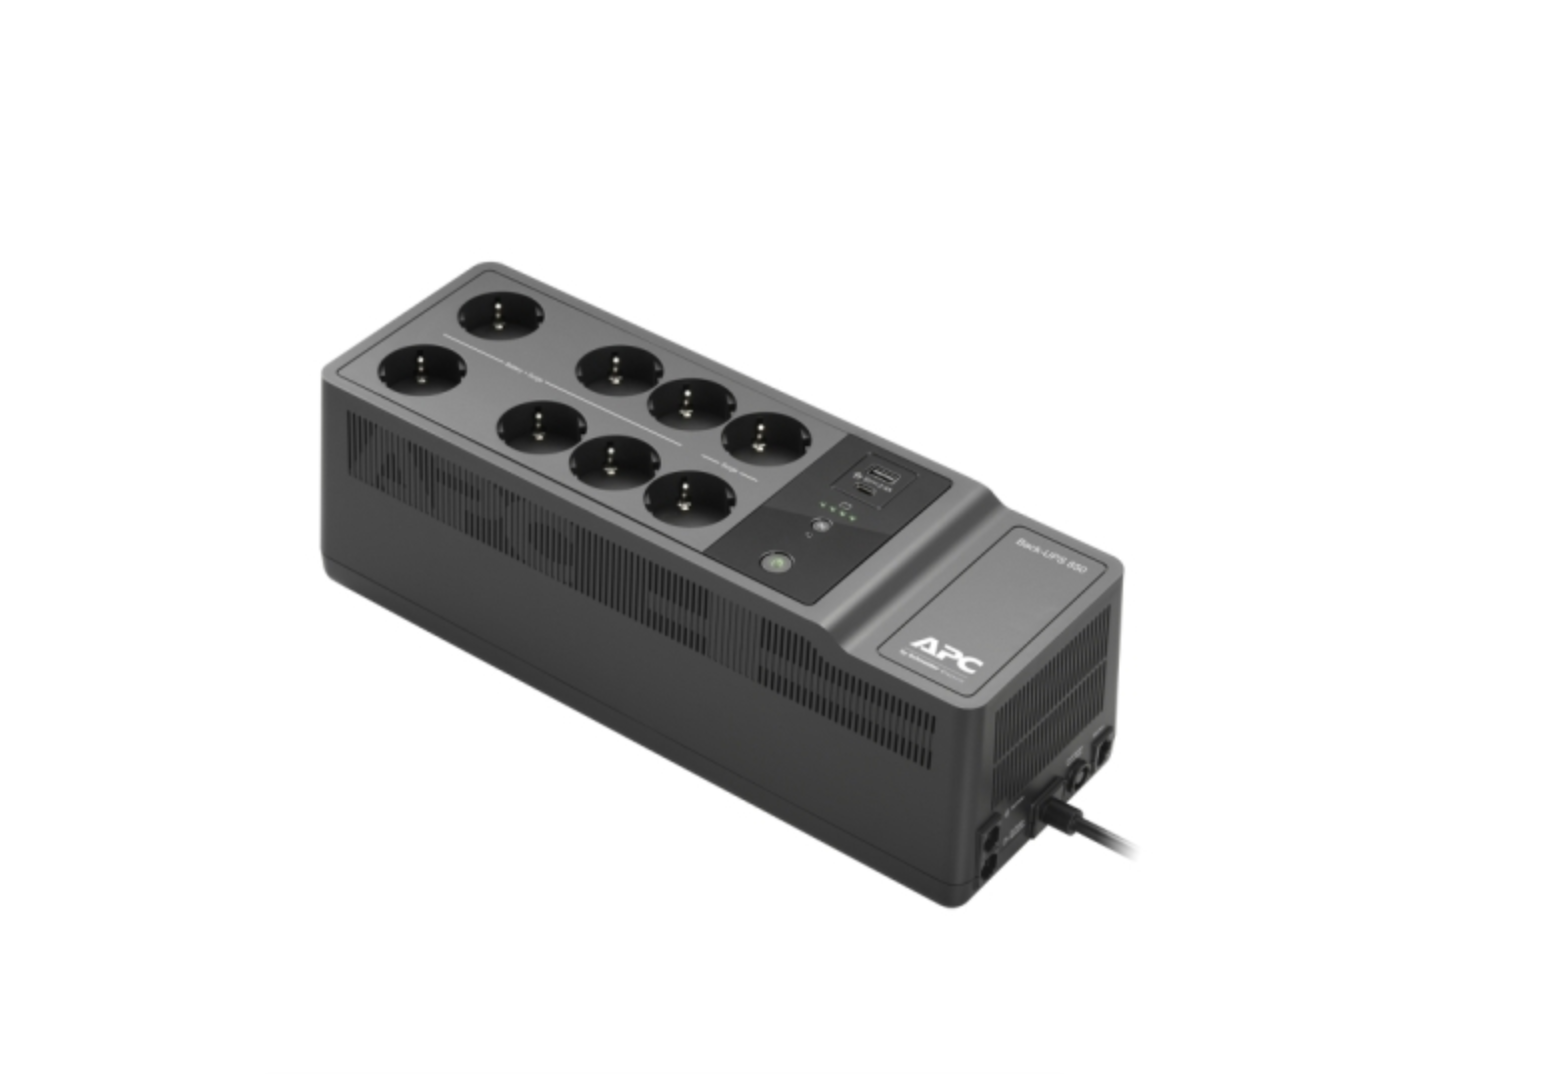 APC Back-UPS 850VA, 230V, 1 USB charging port